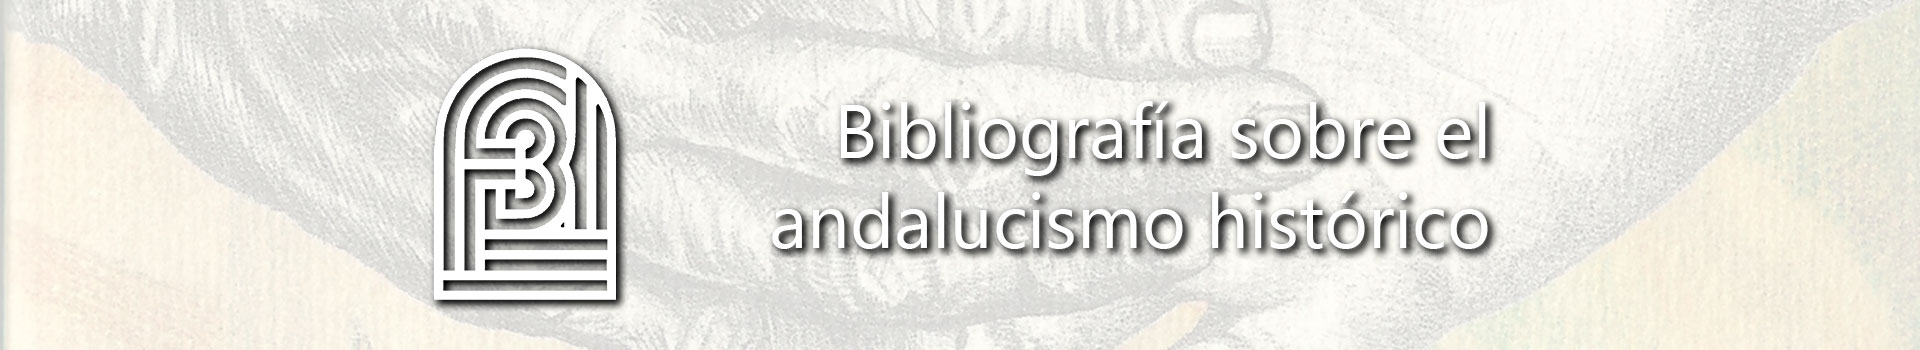 Bibliografía sobre el andalucismo histórico